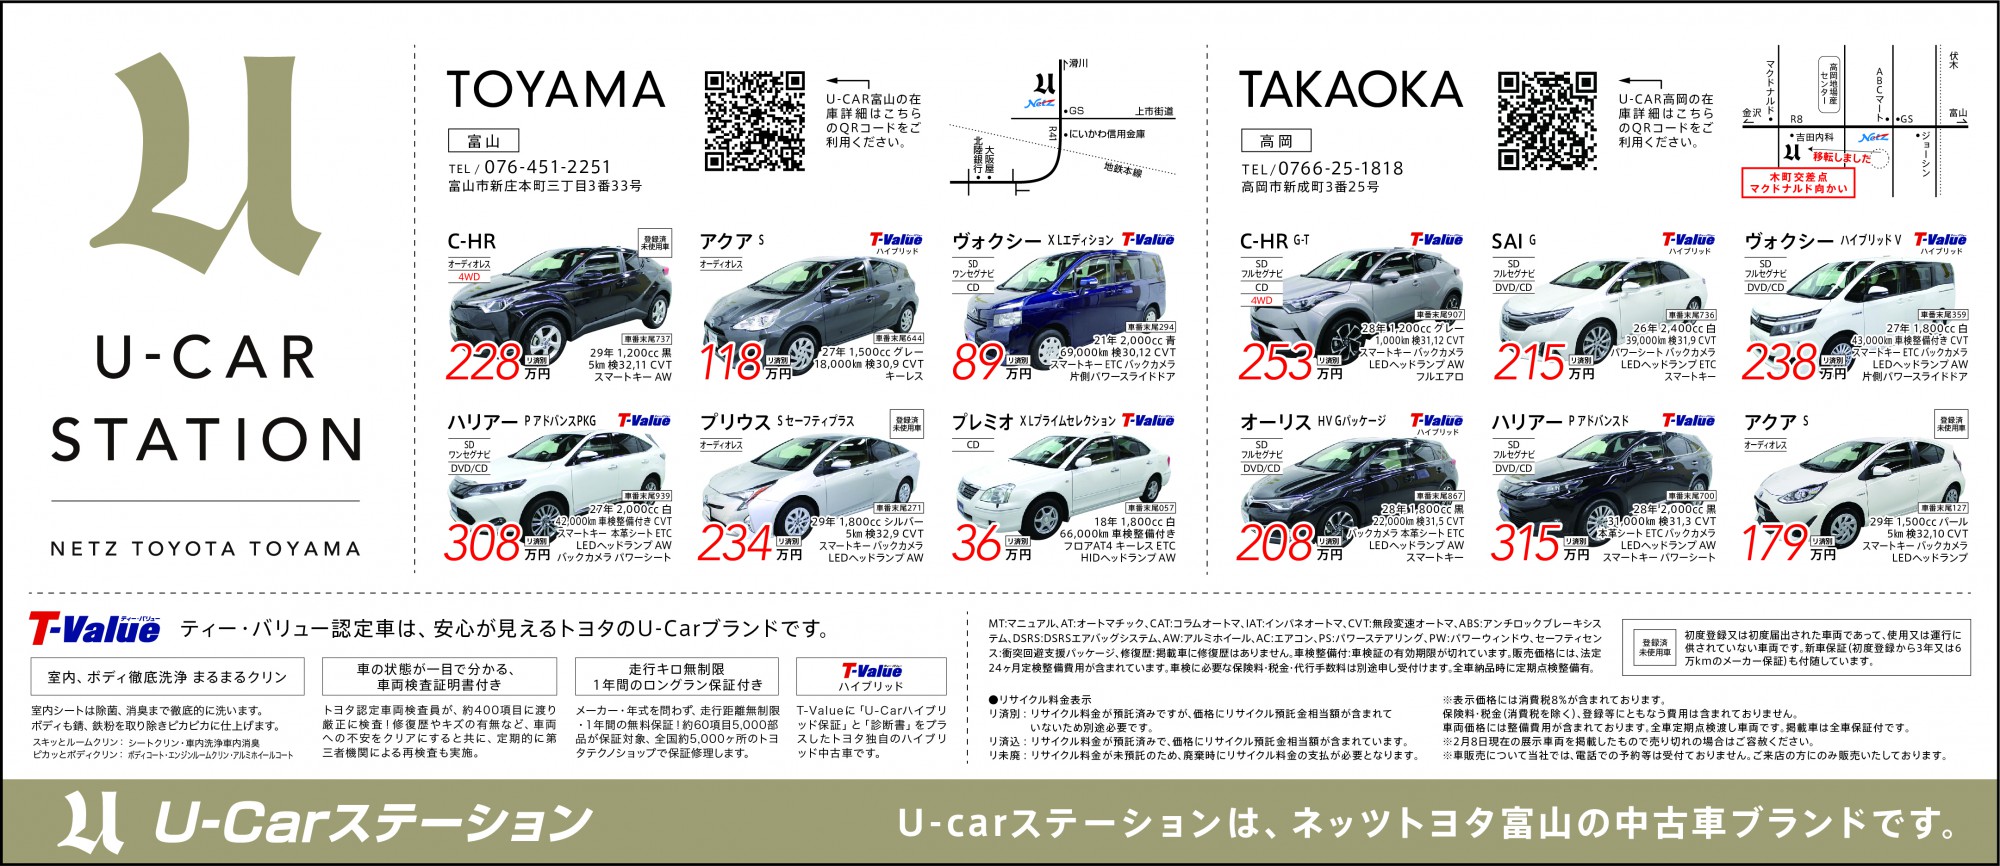 新着情報 U Car Stationの中古車情報 02 10 11 ネッツトヨタ富山 人とクルマの幸せが変わろうとしています